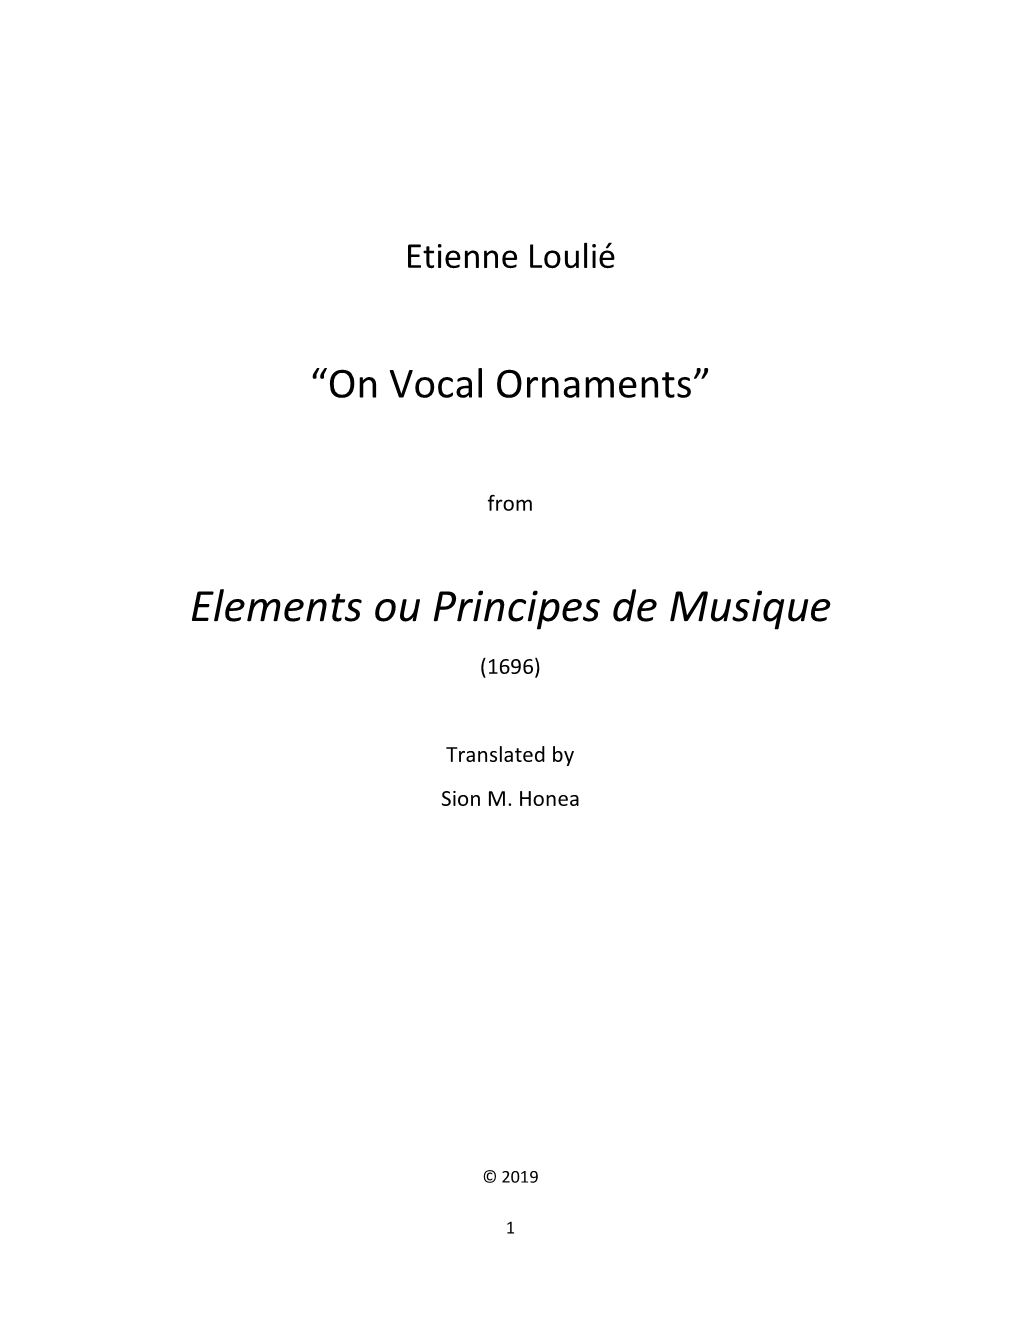 Loulié on Vocal Ornaments